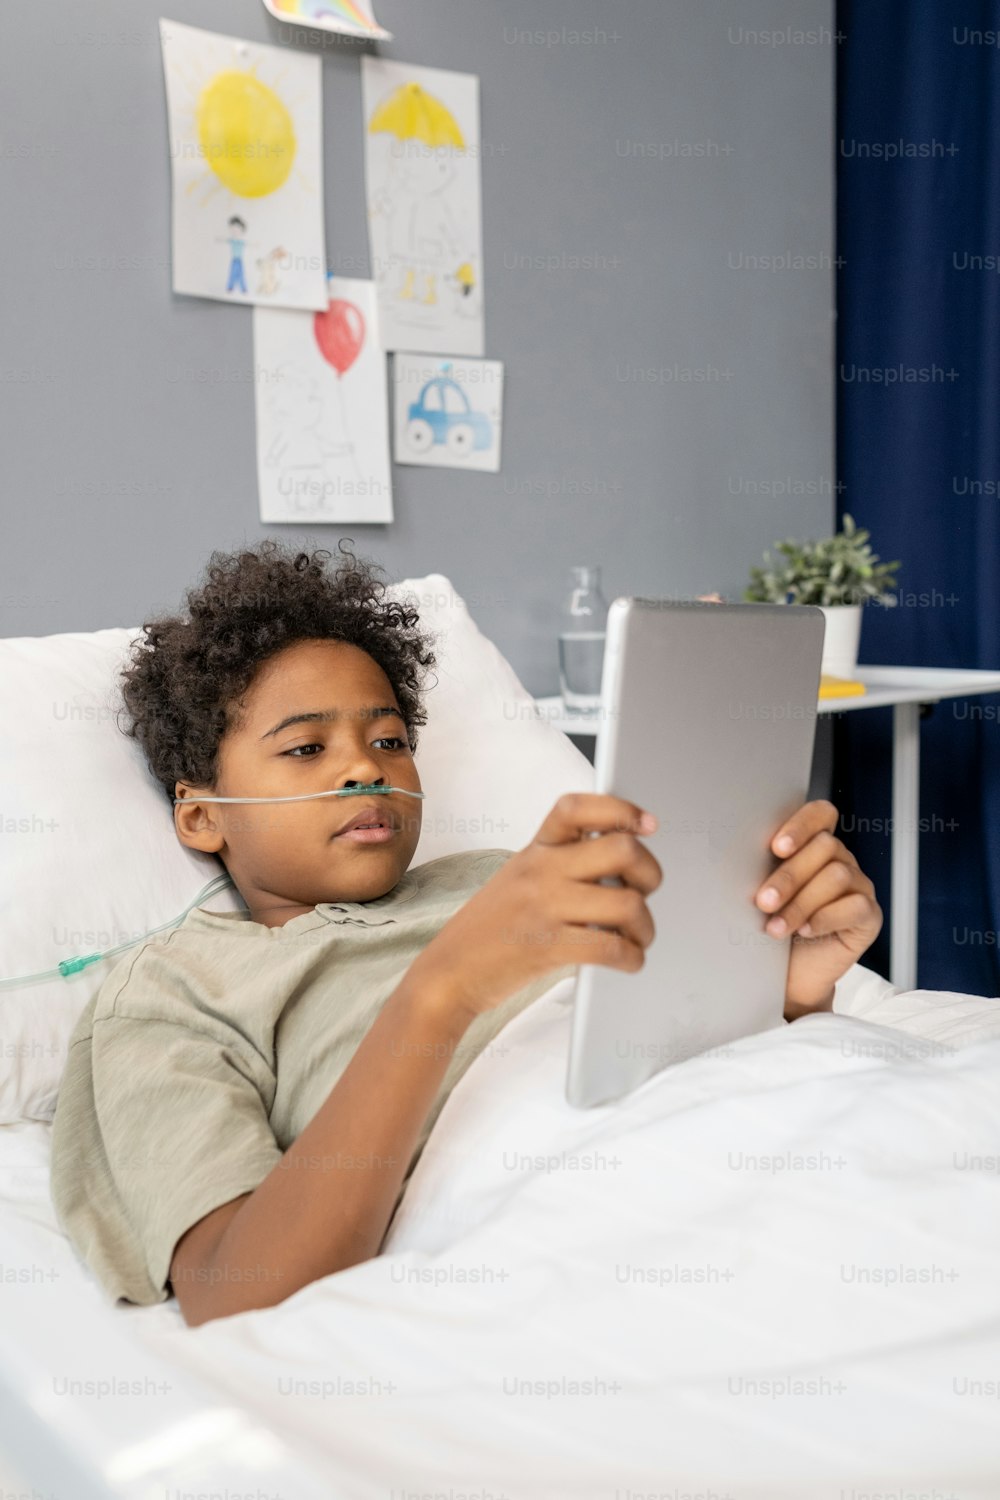 Ragazzino africano che guarda qualcosa sul tablet digitale mentre è sdraiato sul letto nel reparto d'ospedale